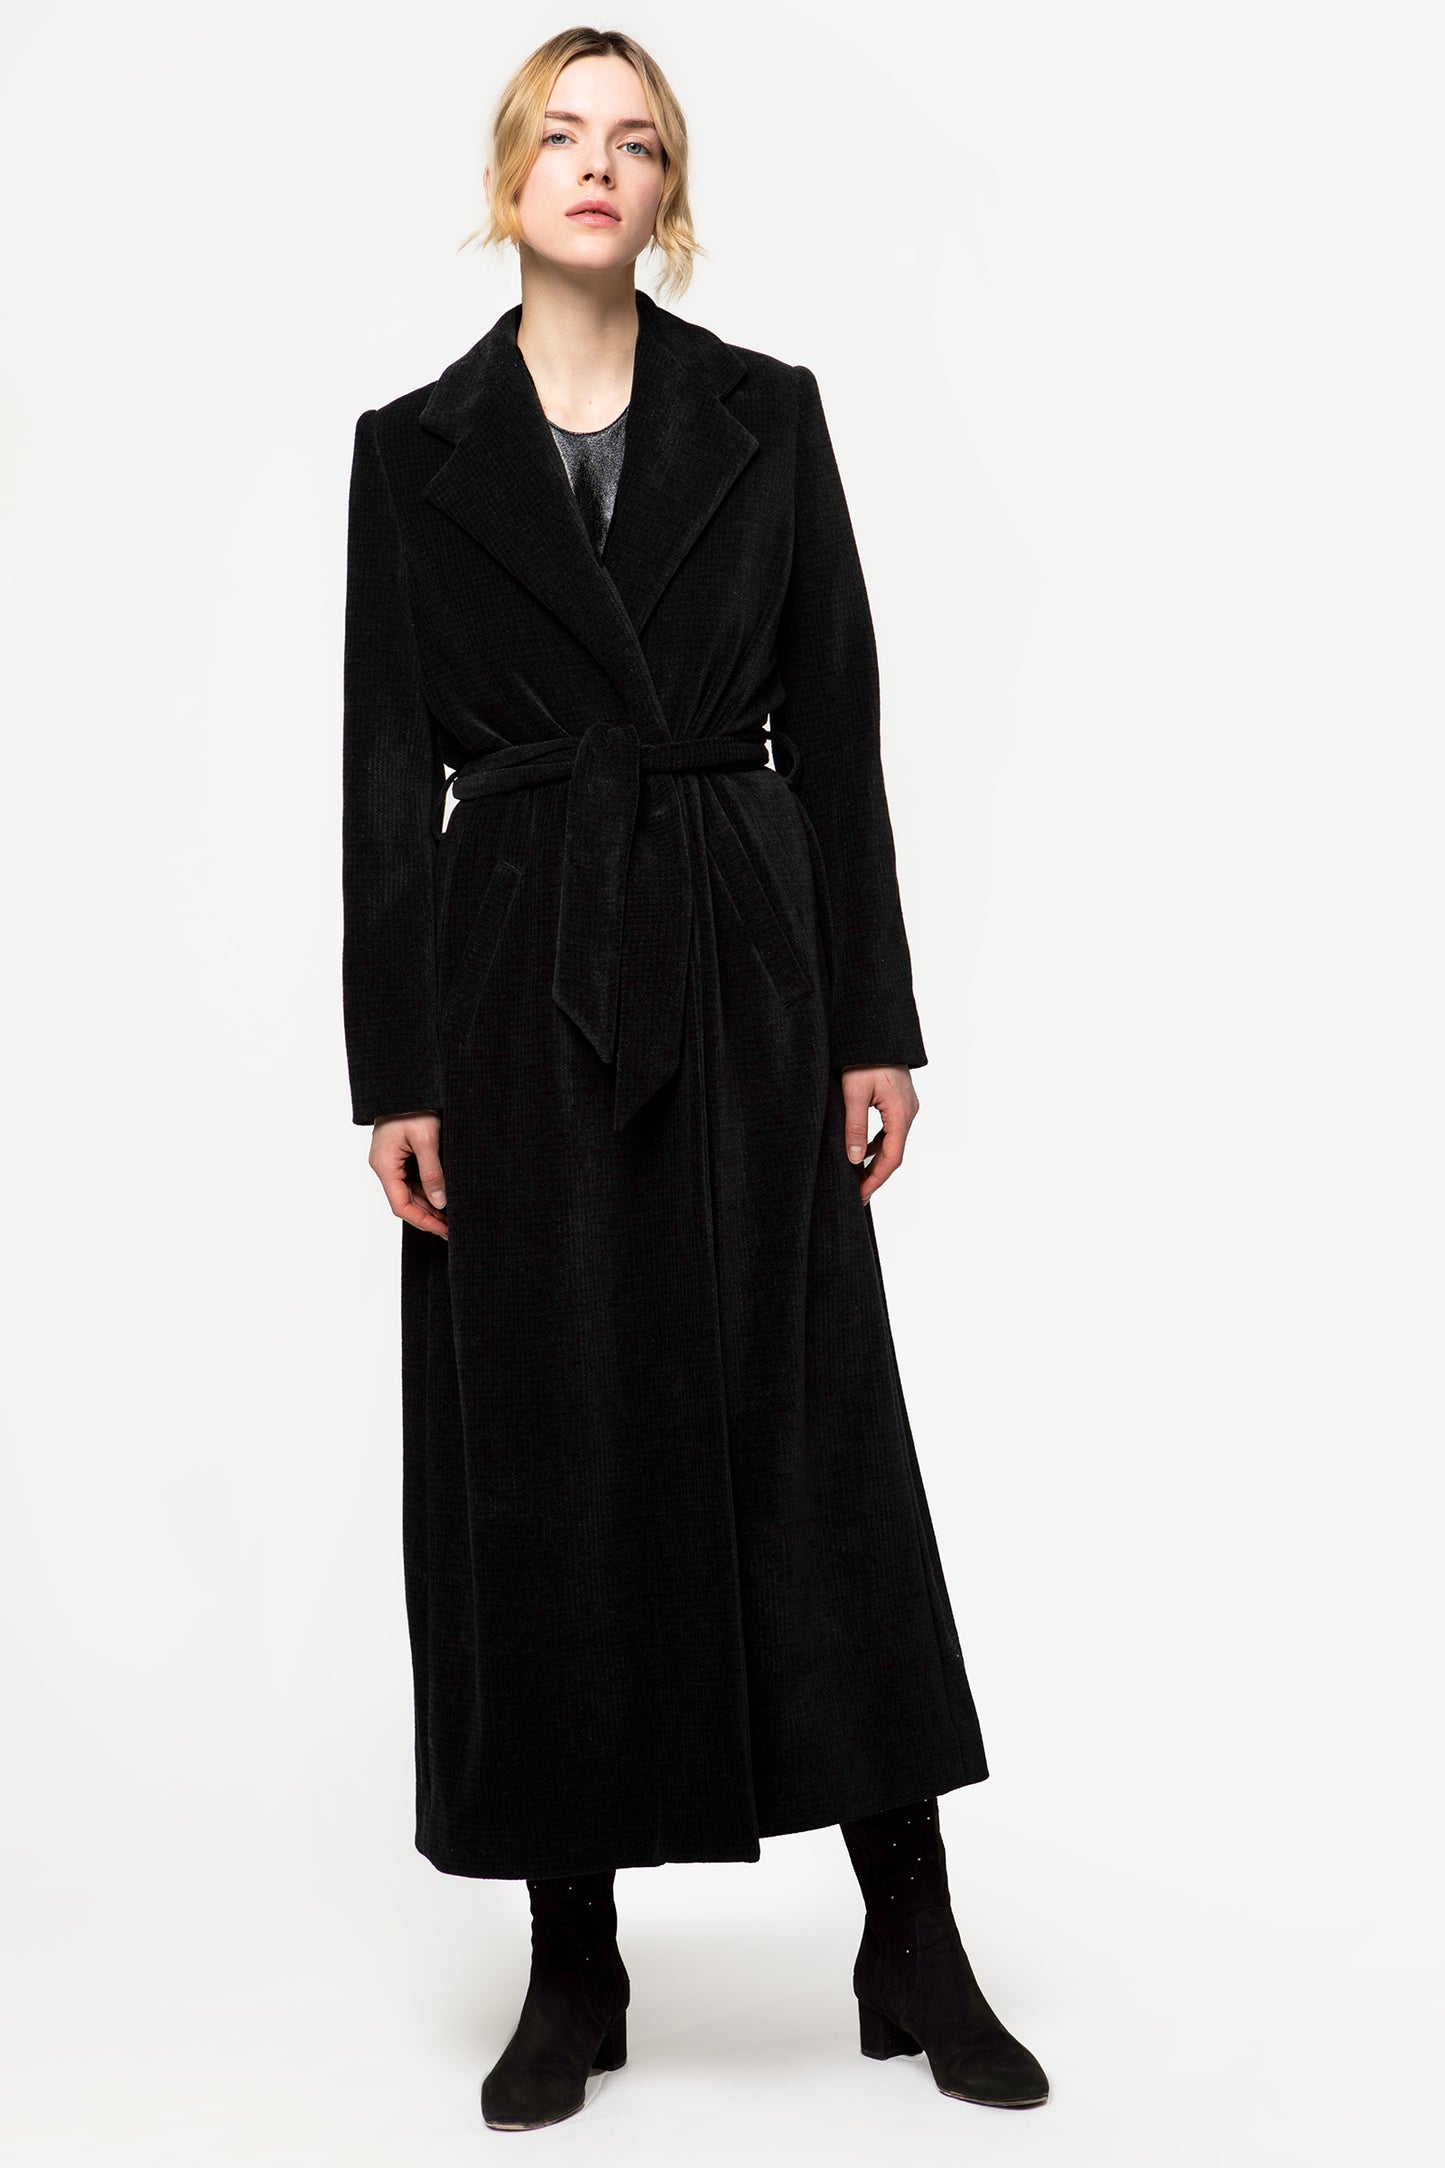 CHRISTINA - Velvet coat